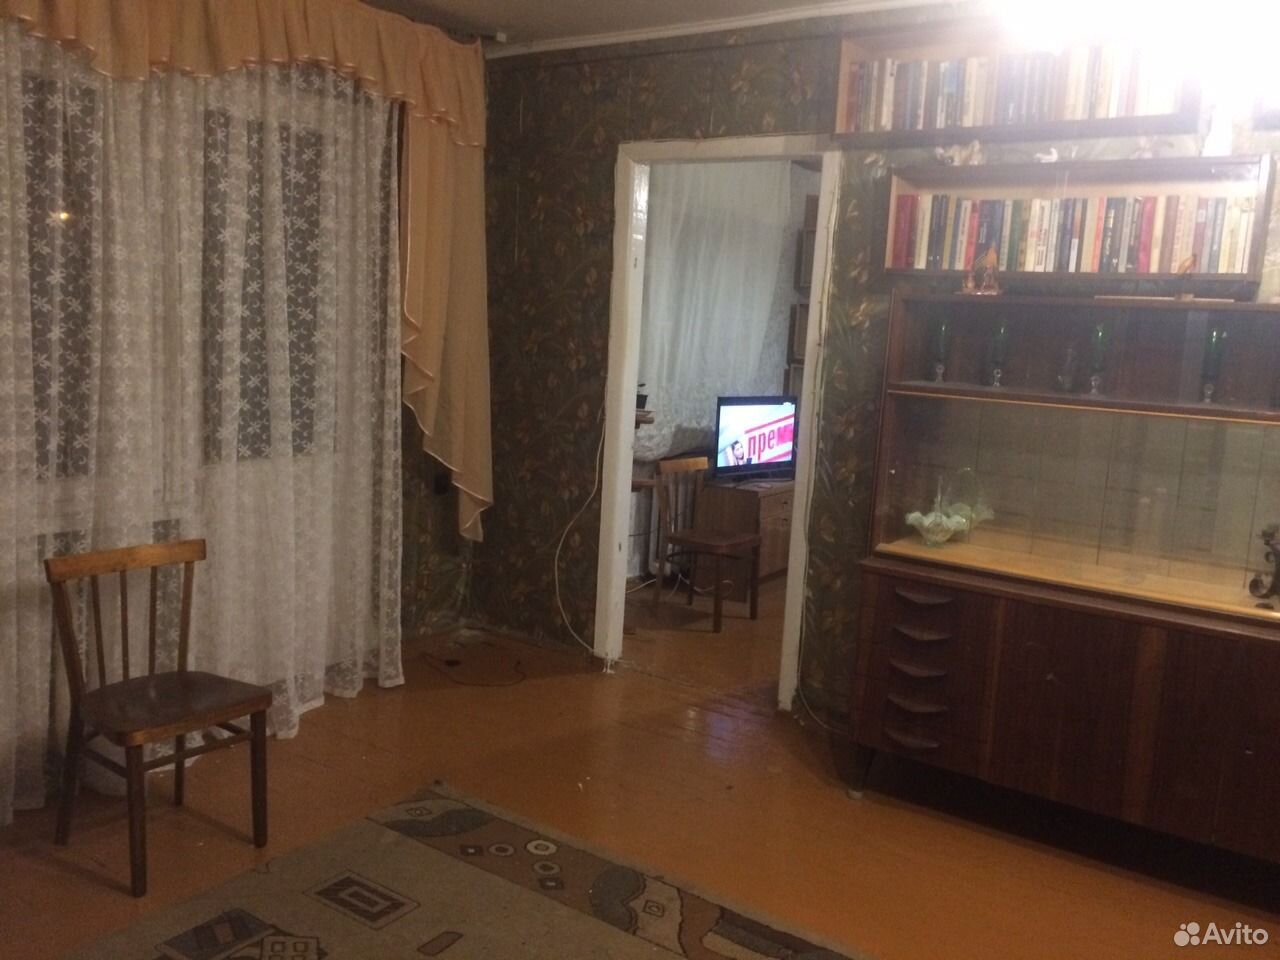 Дешевые 3-х комнатные квартиру в Воронеже купить левый берег.